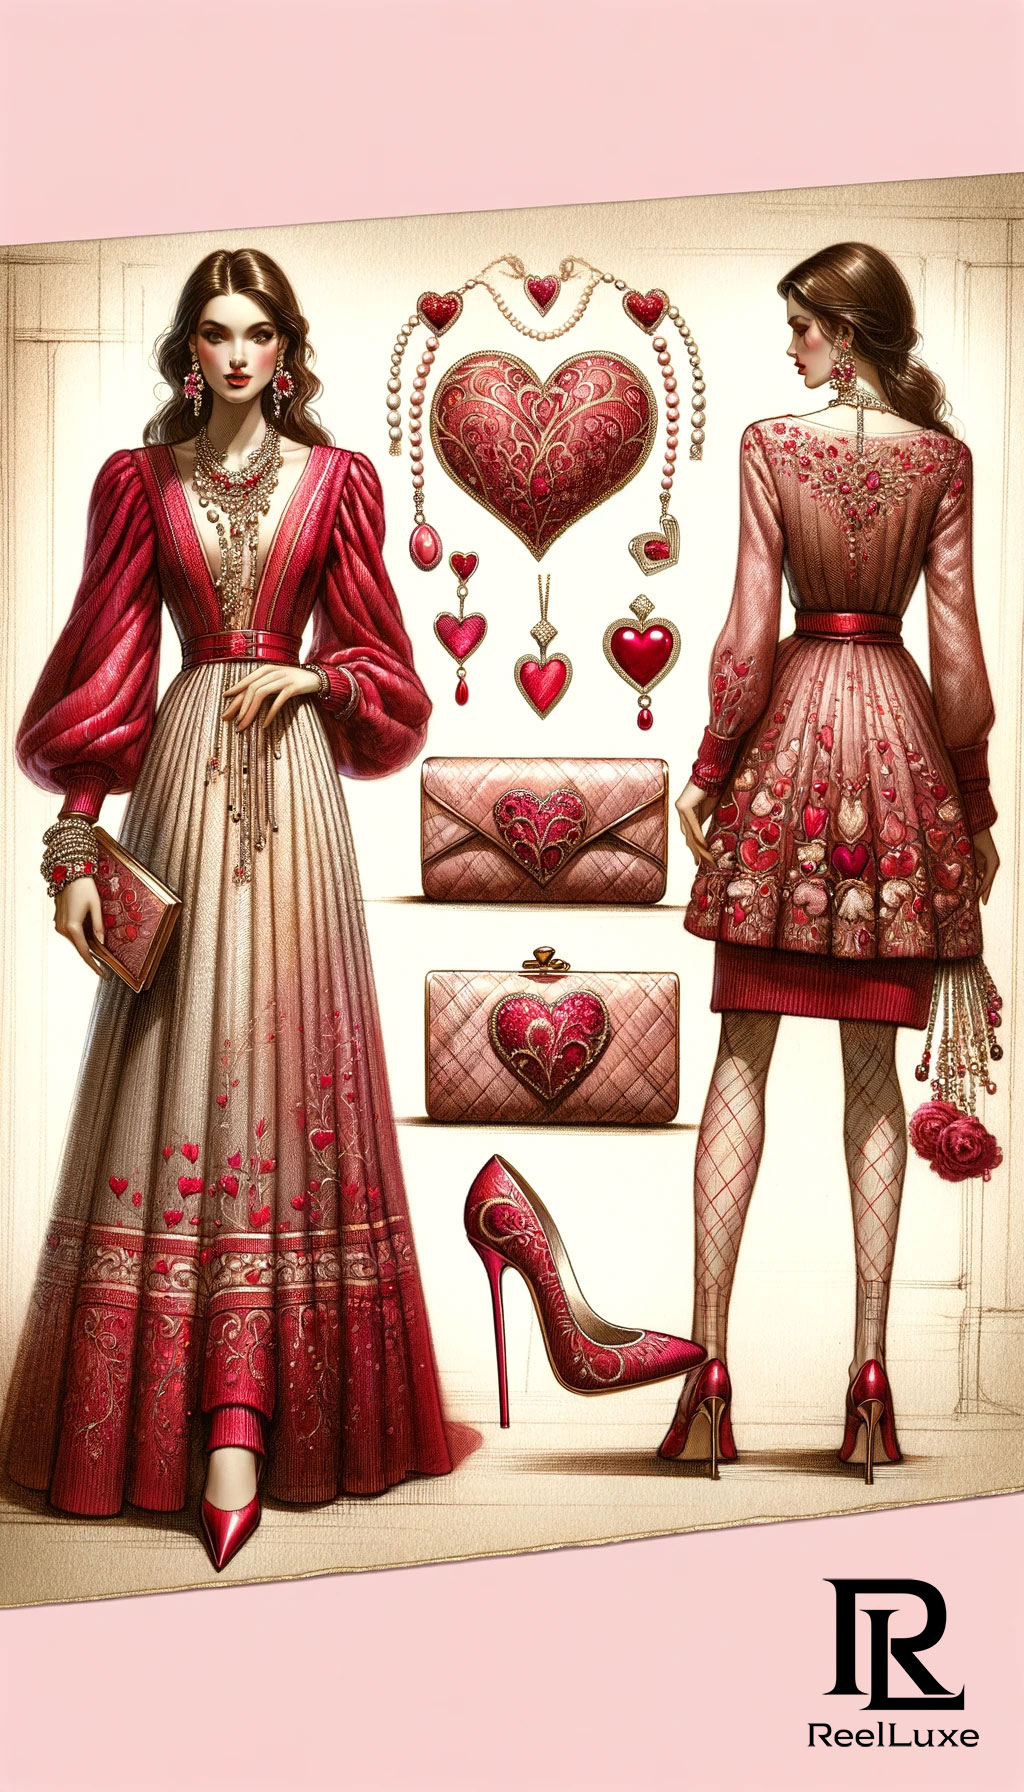 Romance dans l'air - Saint-Valentin - Beauté et Mode - 9